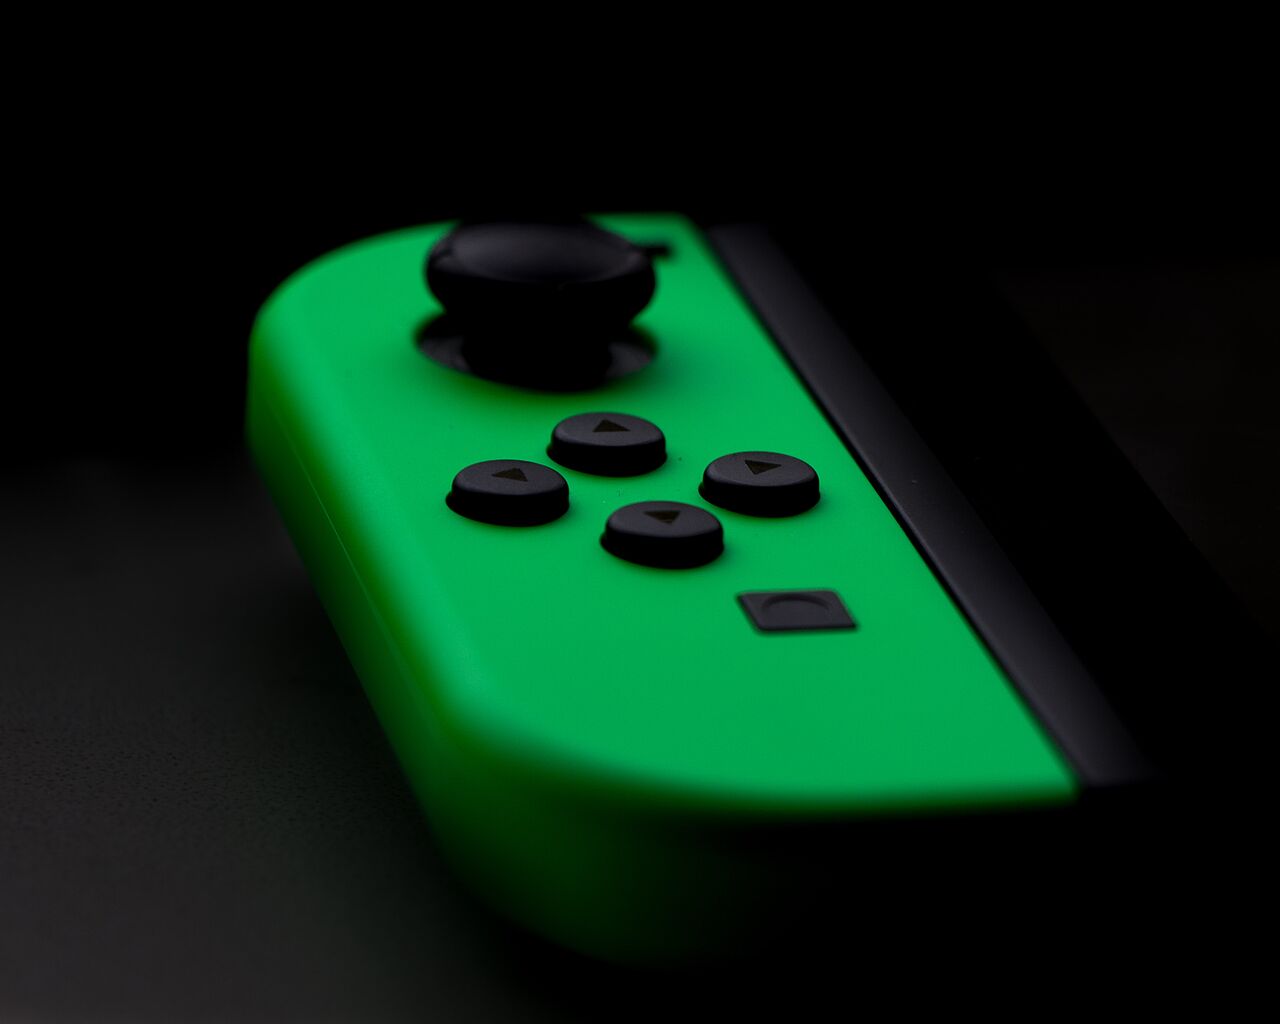 grüner Nintendo Switch Controller vor schwarzem Hintergrund